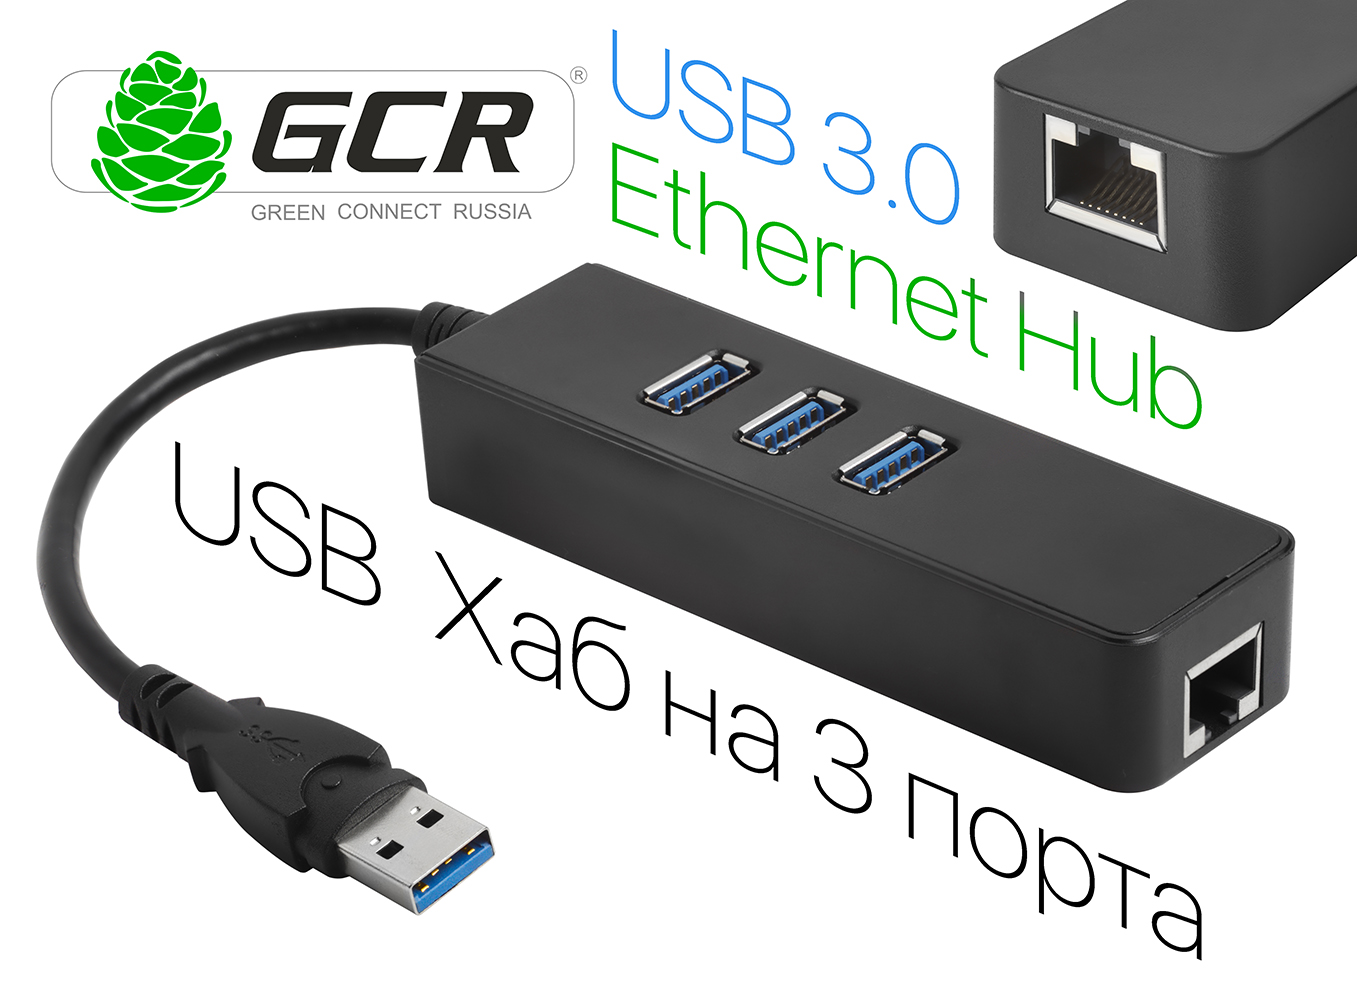 Разветвитель USB 3.0 на 3 порта + Ethernet RJ-45